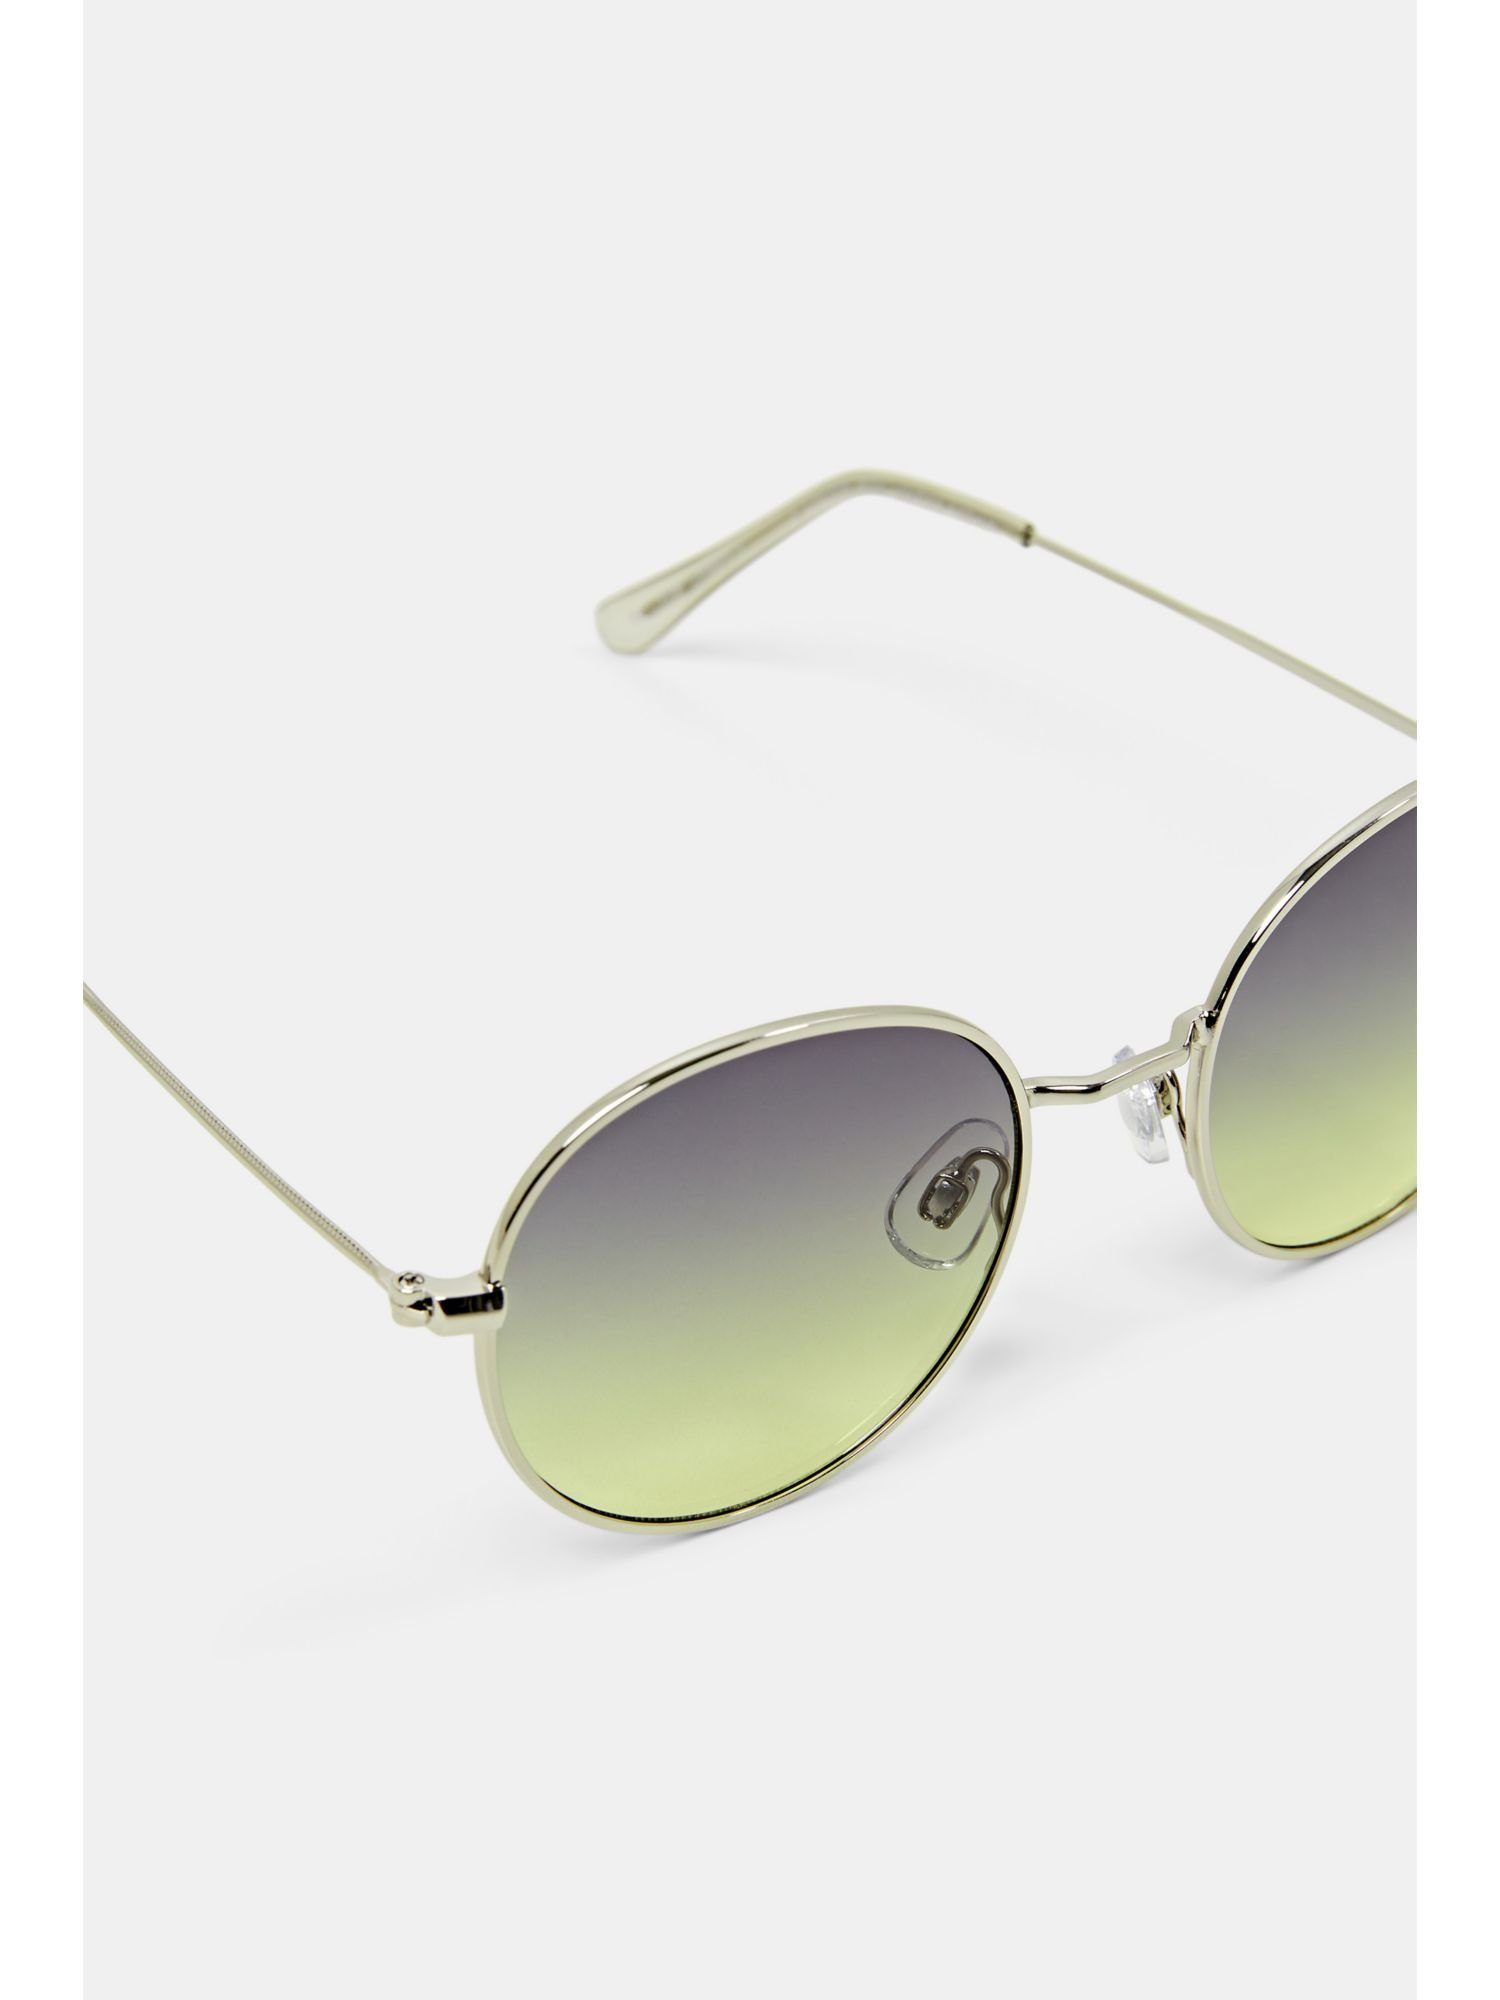 Sonnenbrille Metallgestell mit Esprit Sonnenbrille